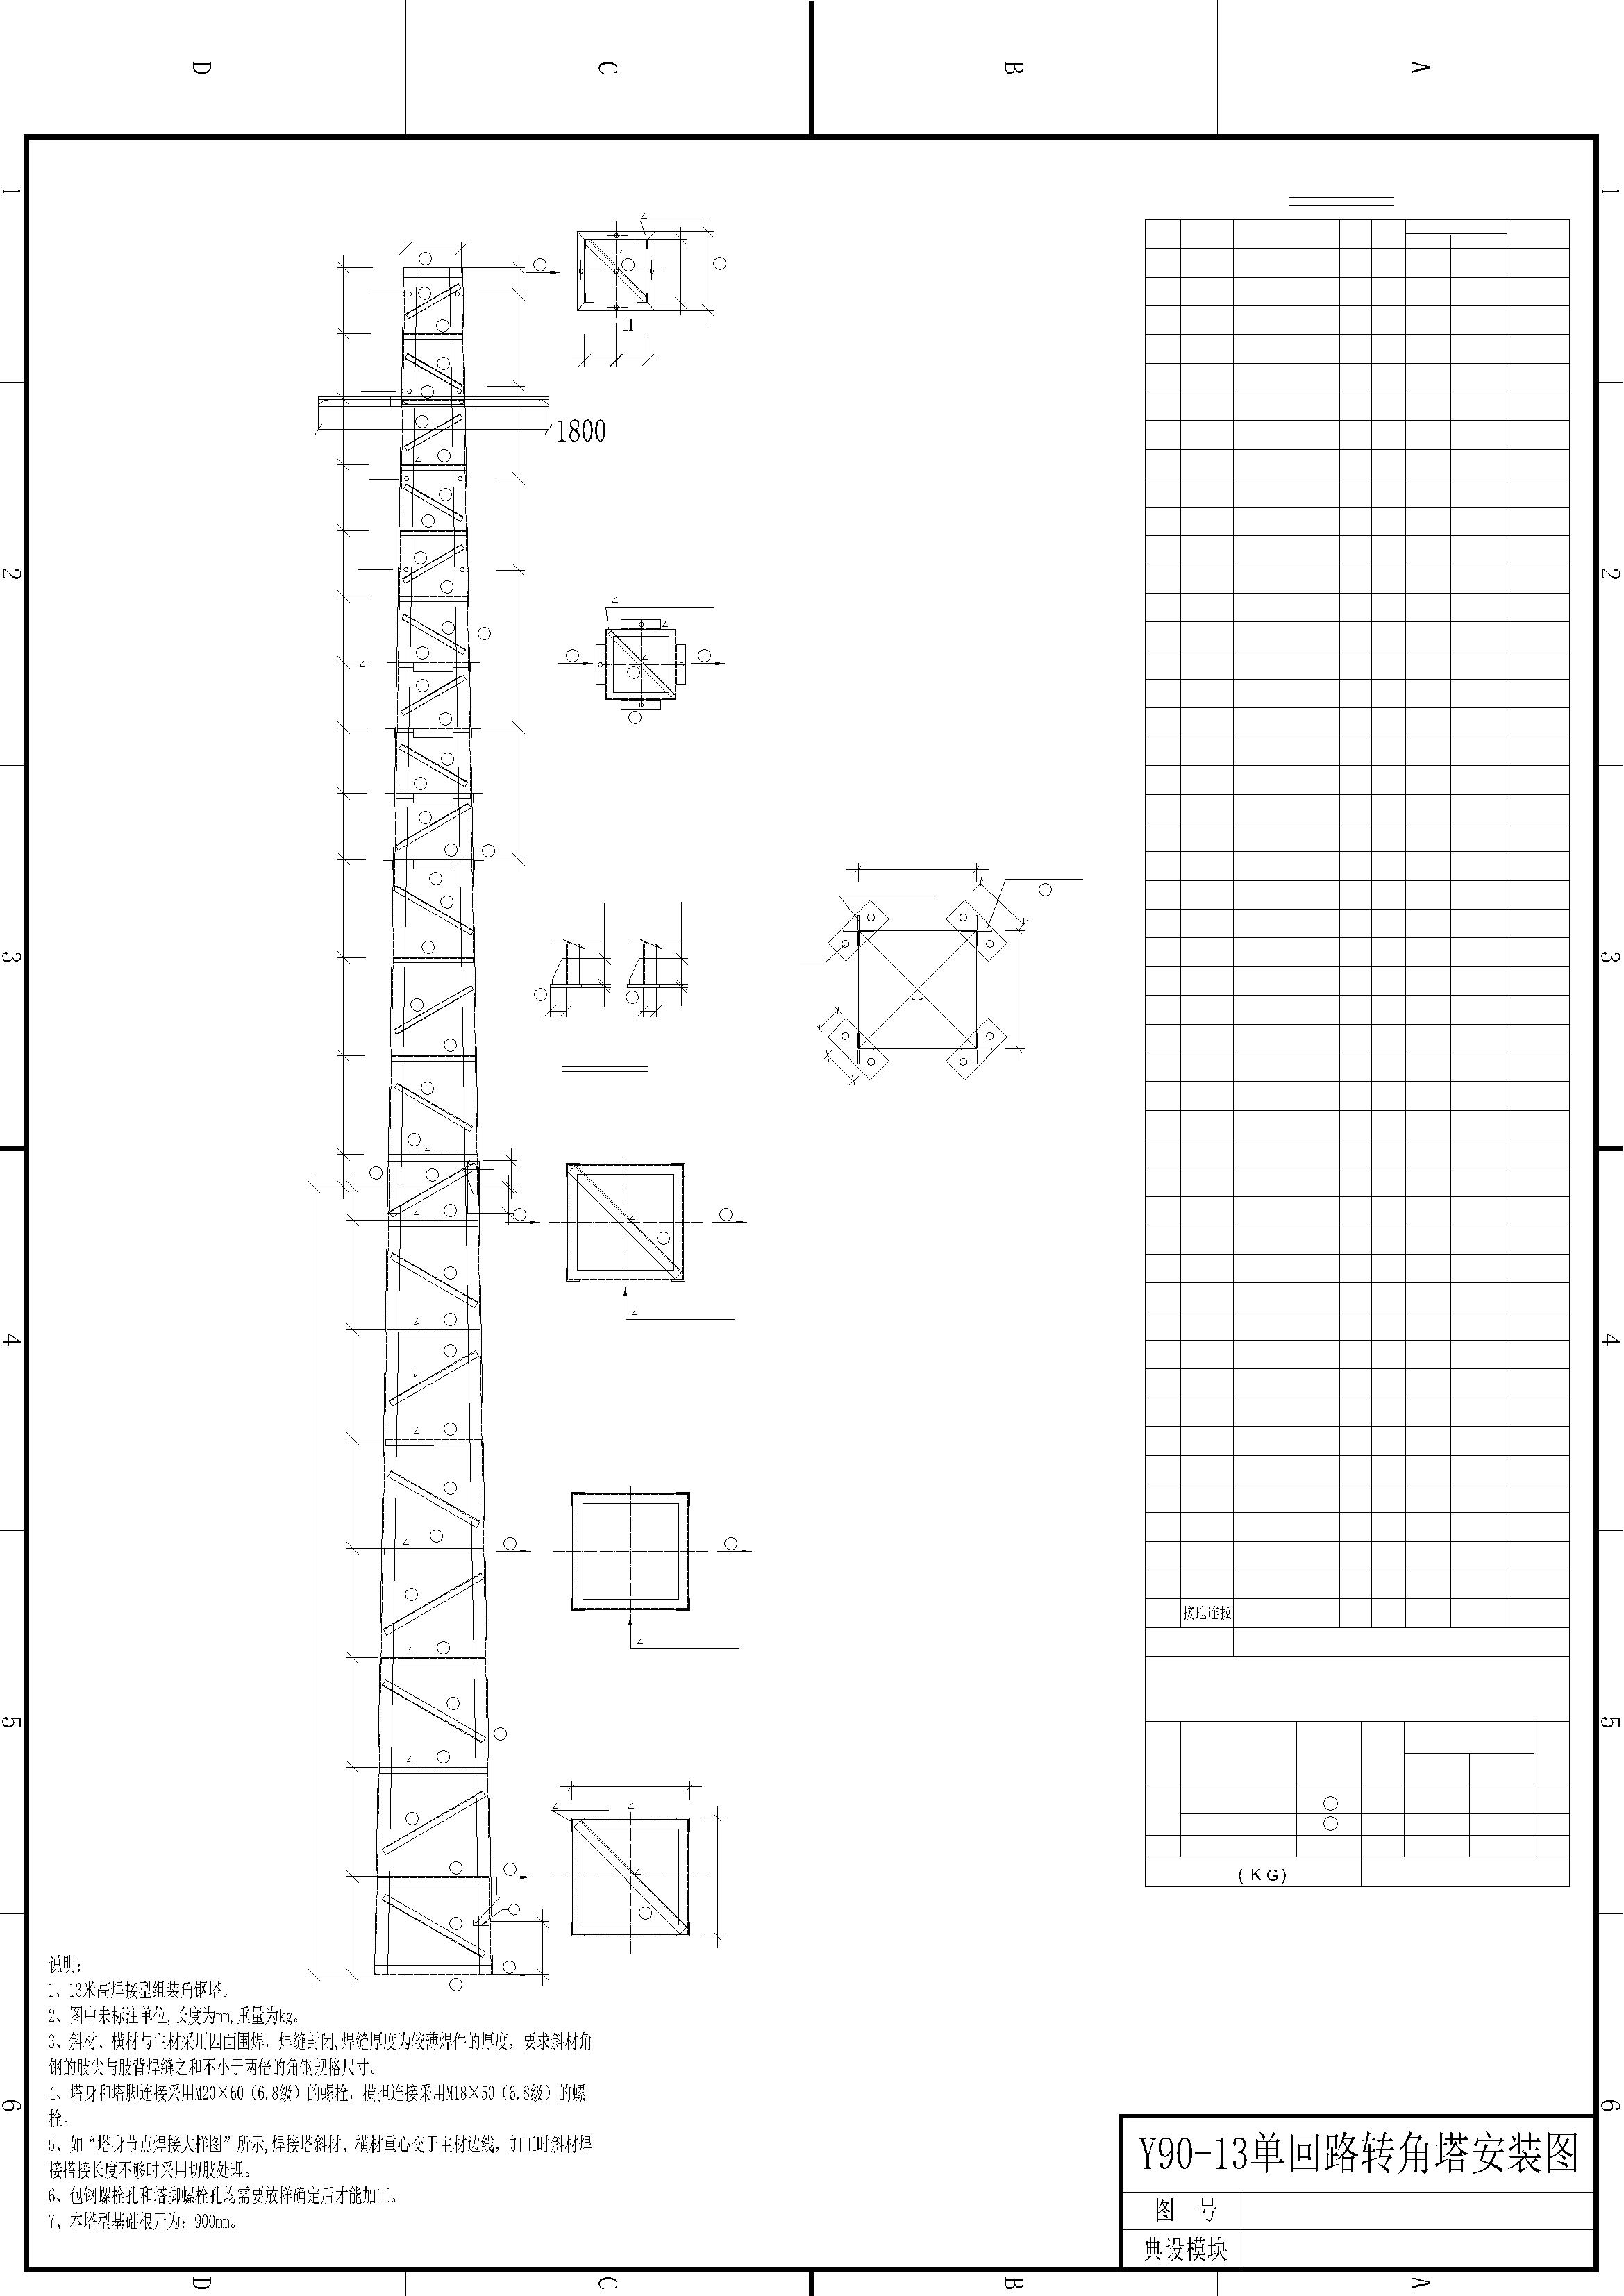 Y90-13铁塔Y90-15铁塔Y90-18铁塔结构图及基础图